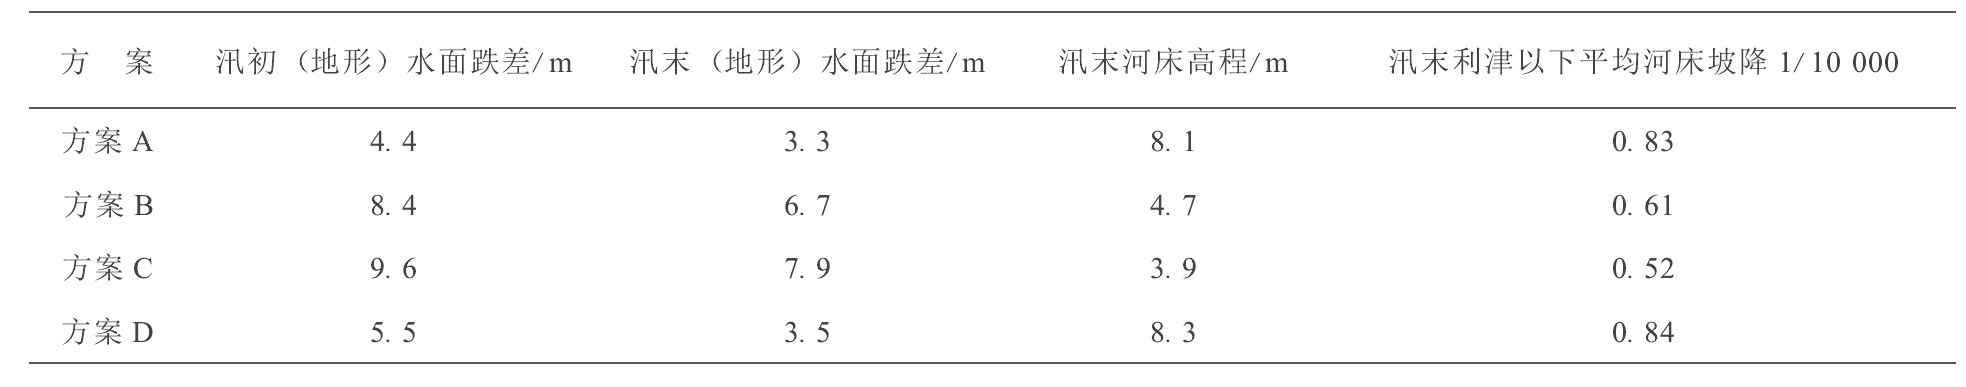 表2 各方案冲刷平衡后, 利津的水面跌差、河床高程及水面坡降Table 2 Drop in water surface, bed elevation and slope of the river at Lijin after erosion